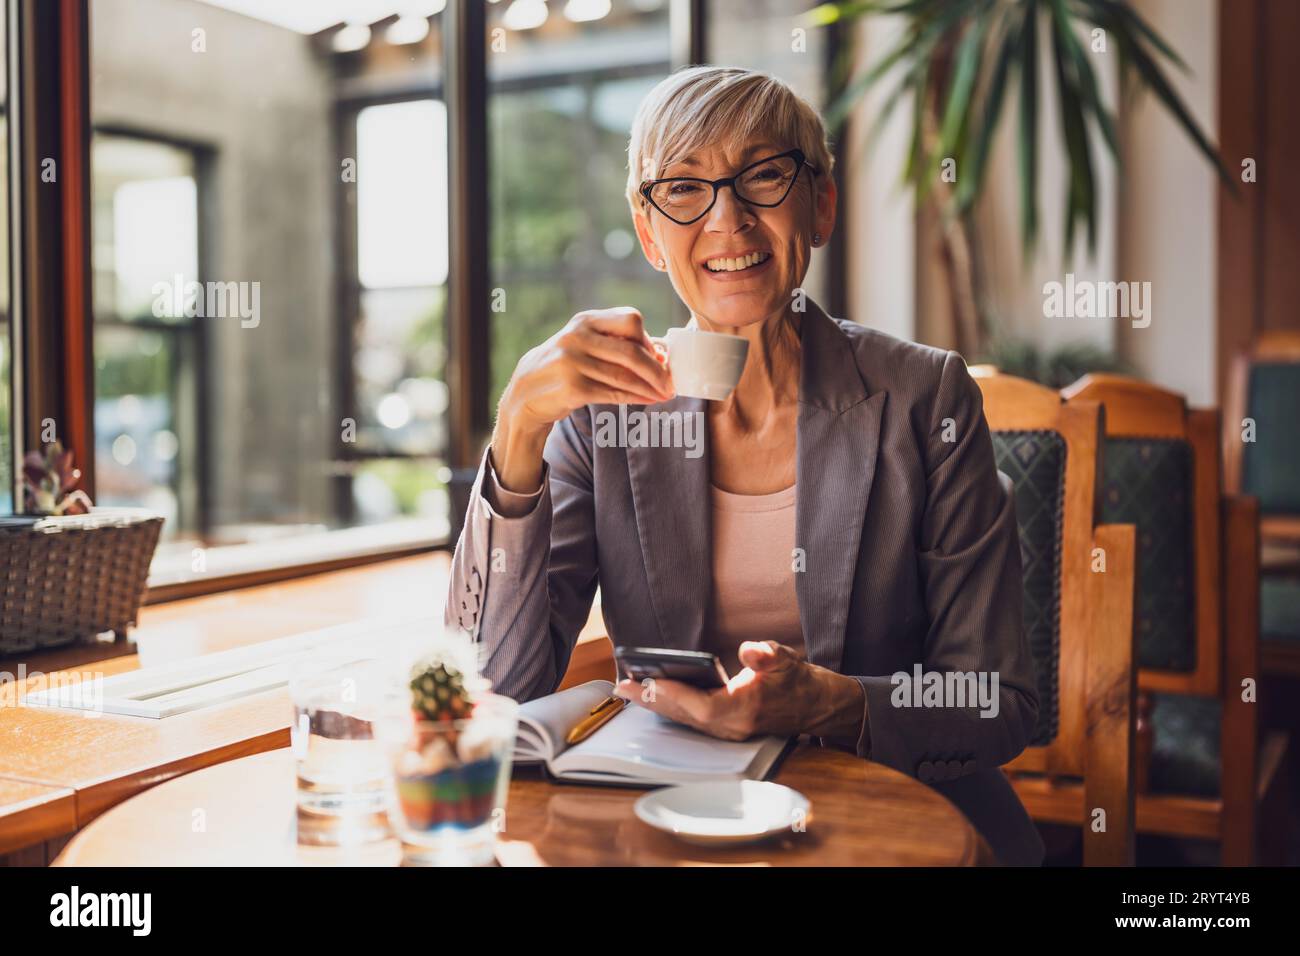 Una donna matura è seduta in una caffetteria e si sta rilassando. Sta bevendo caffè e sta usando lo smartphone. Foto Stock